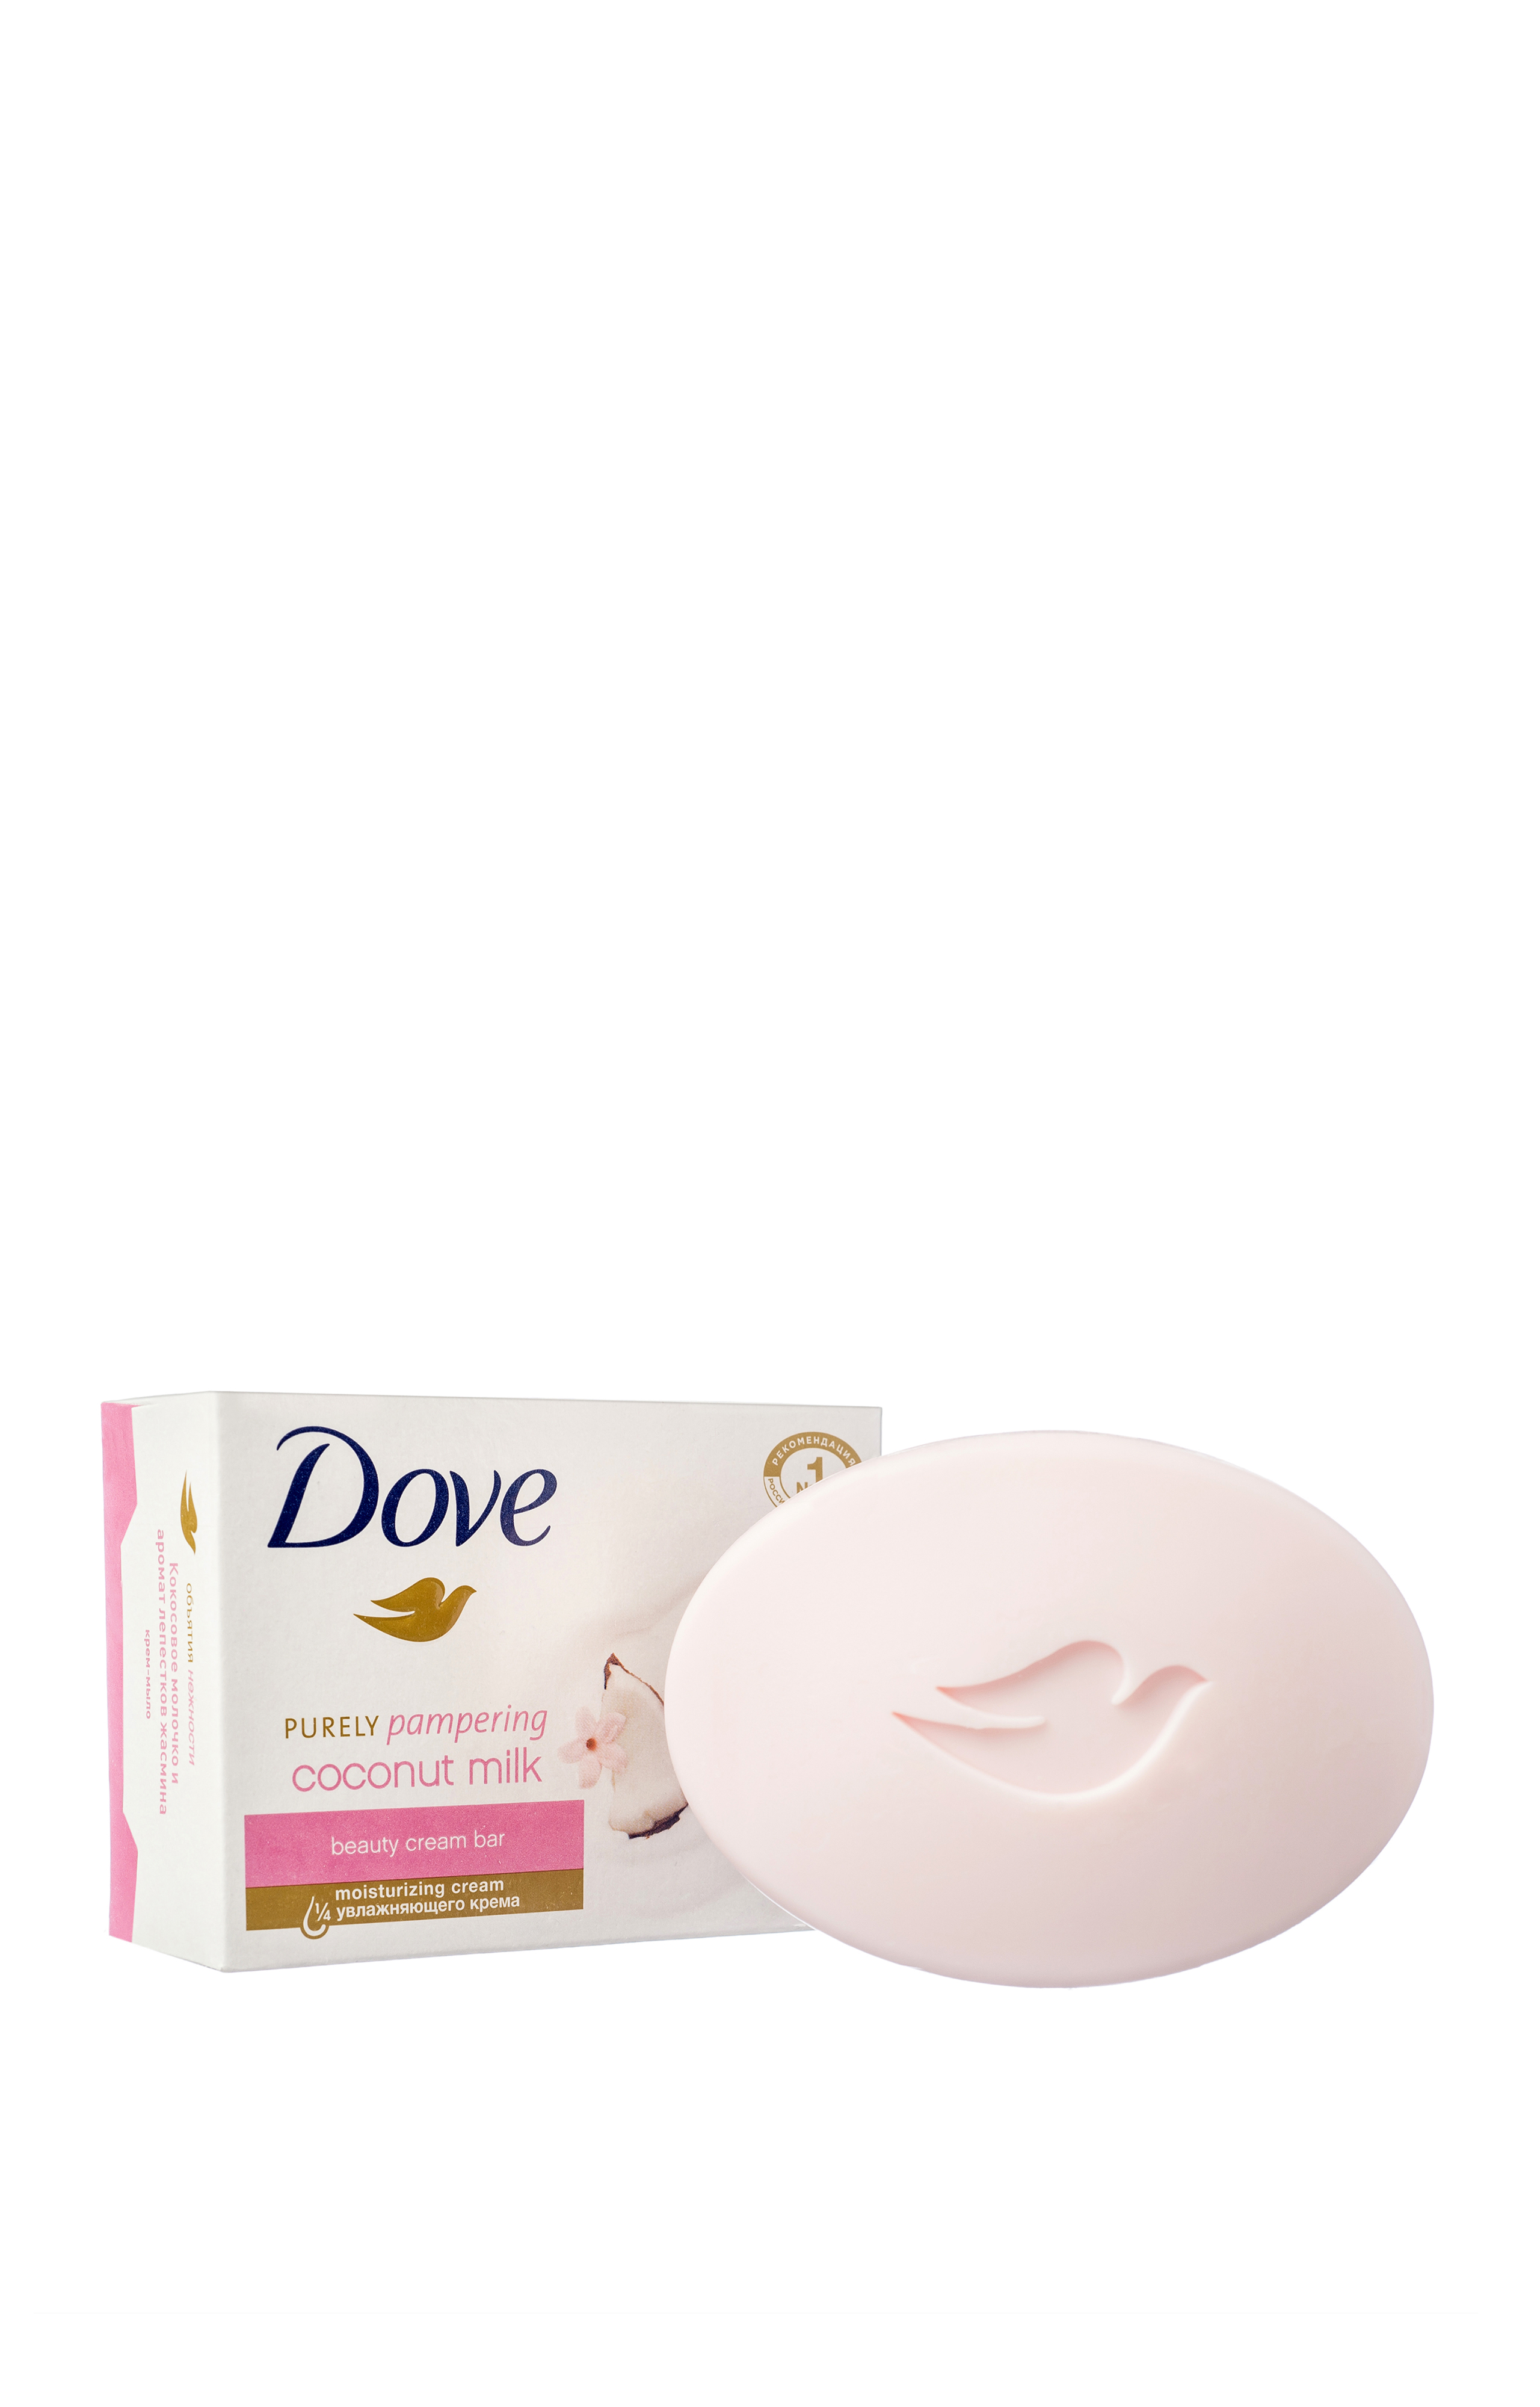 фото Dove крем-мыло, кокосовое молочко и лепестки жасмина, 135 гр